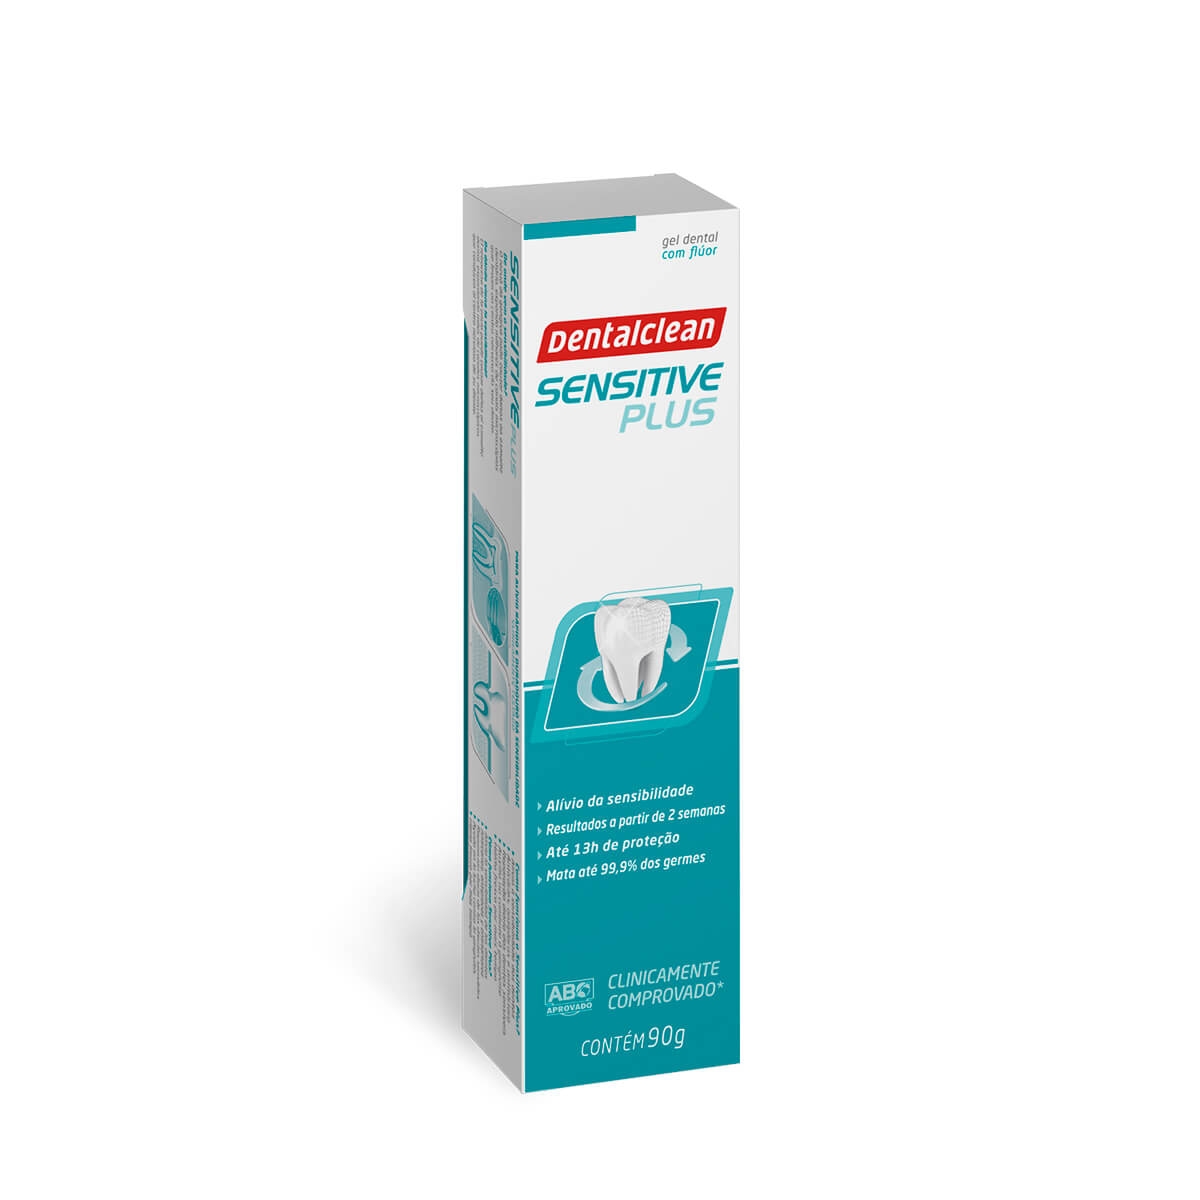 Gel Dental com Flúor Dentalclean Sensitive Plus Alívio da Sensibilidade com 90g 90g